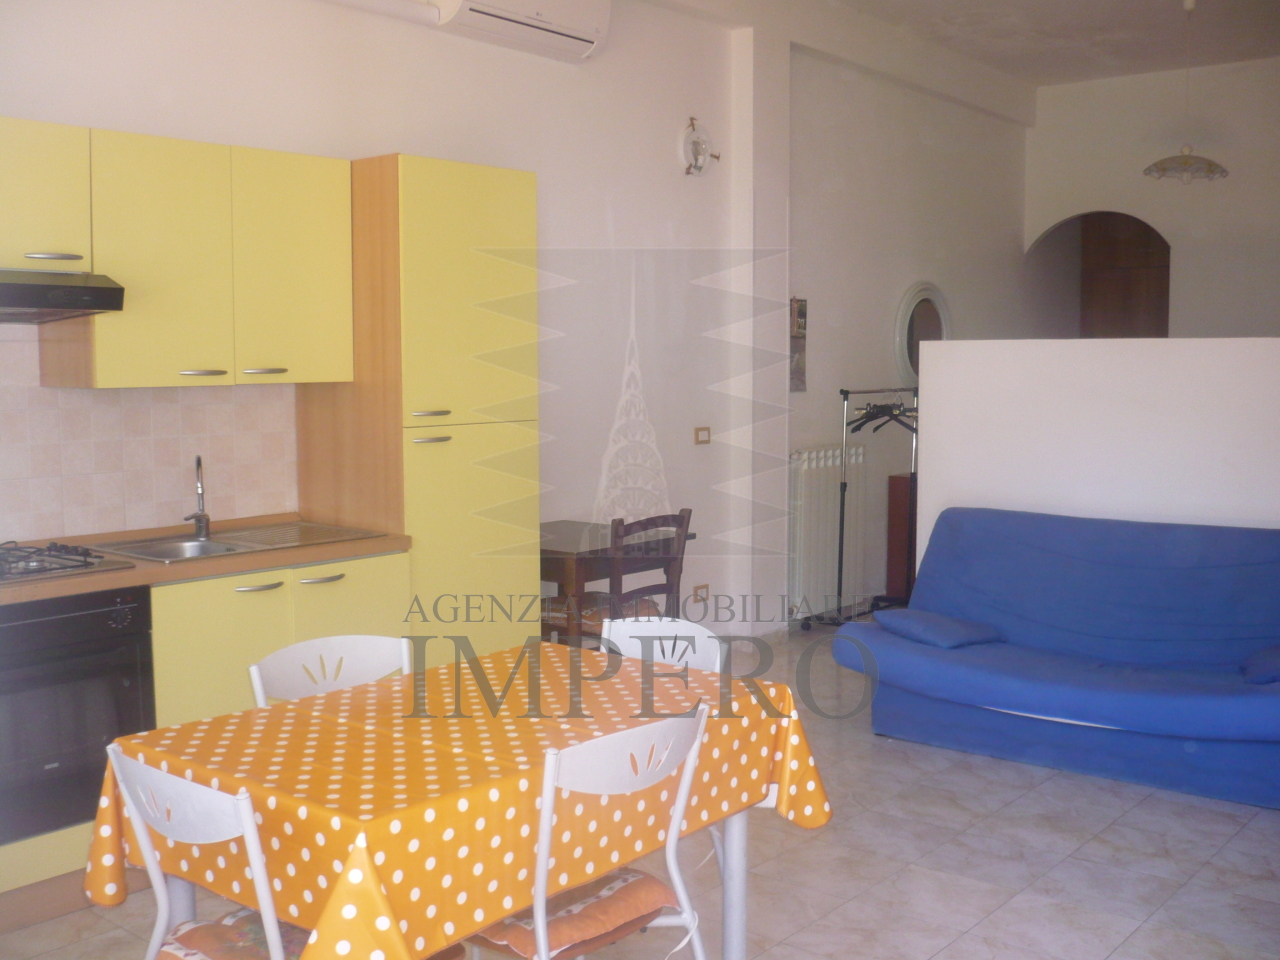 Appartamento in vendita a Ventimiglia, 2 locali, prezzo € 145.000 | PortaleAgenzieImmobiliari.it